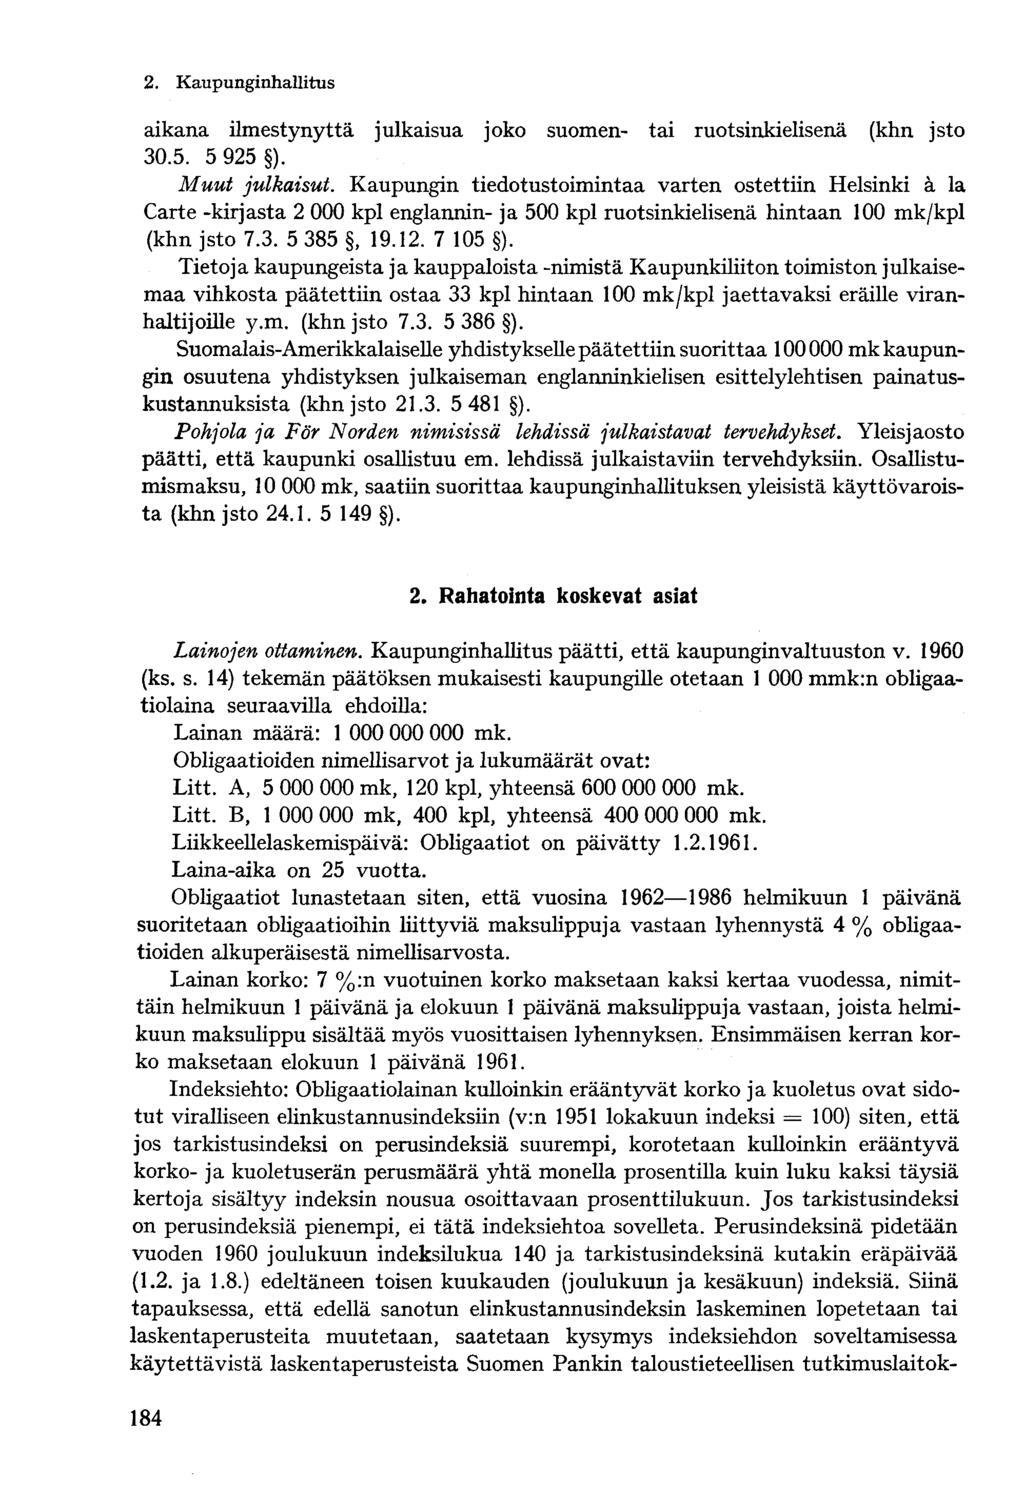 2. Kaupungin hallitus aikana ilmestynyttä julkaisua joko suomen- tai ruotsinkielisenä (khn jsto 30.5. 5 925 ). Muut julkaisut.